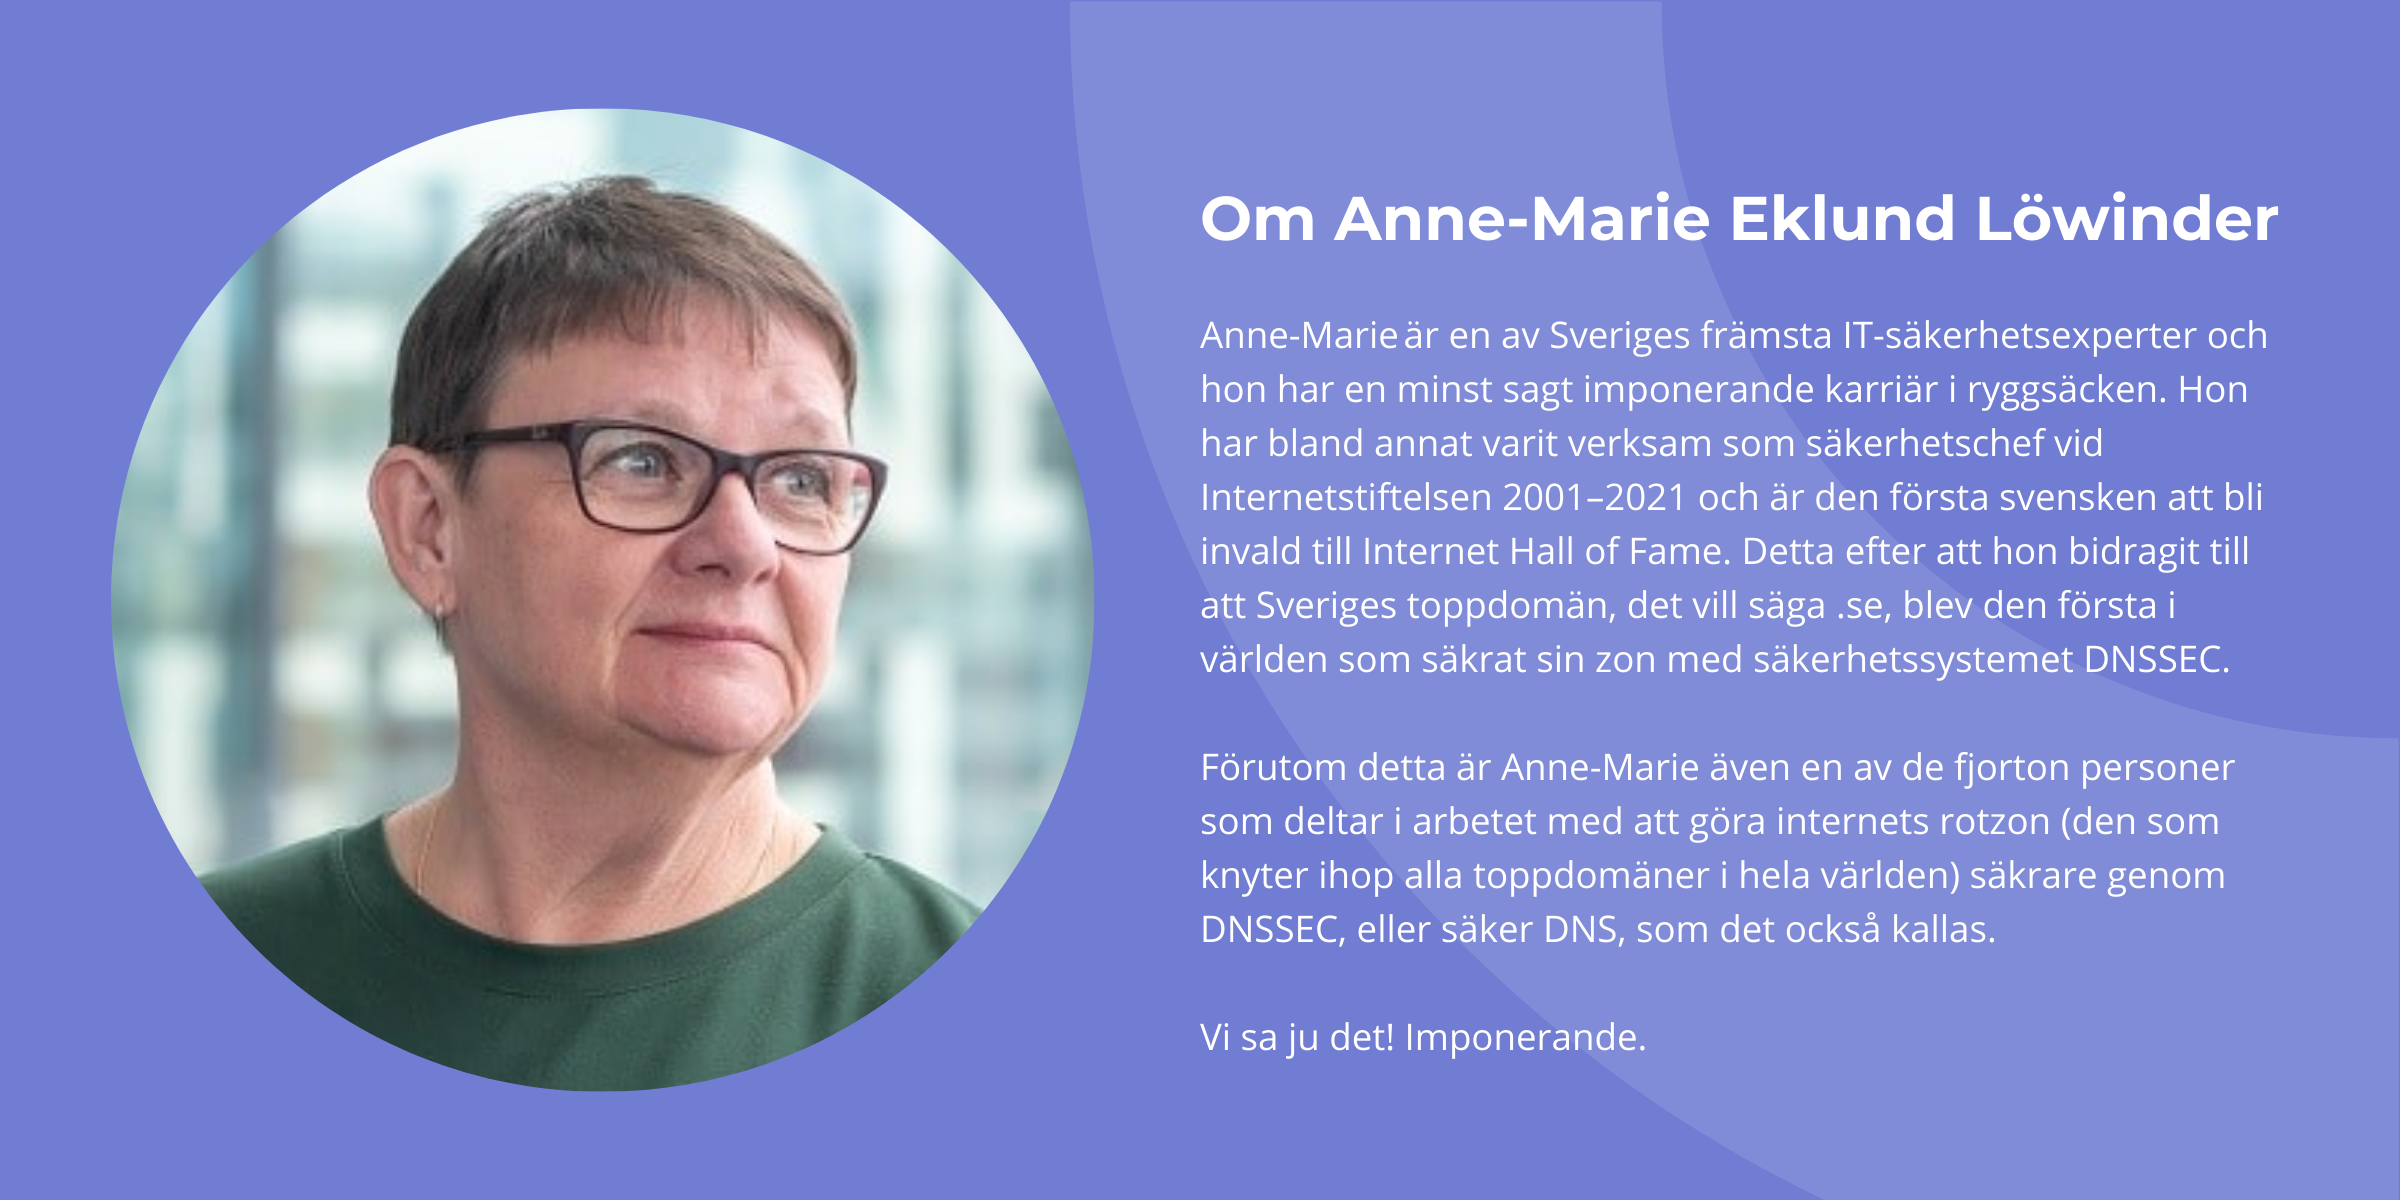 About Anne-Marie Eklund Löwinder